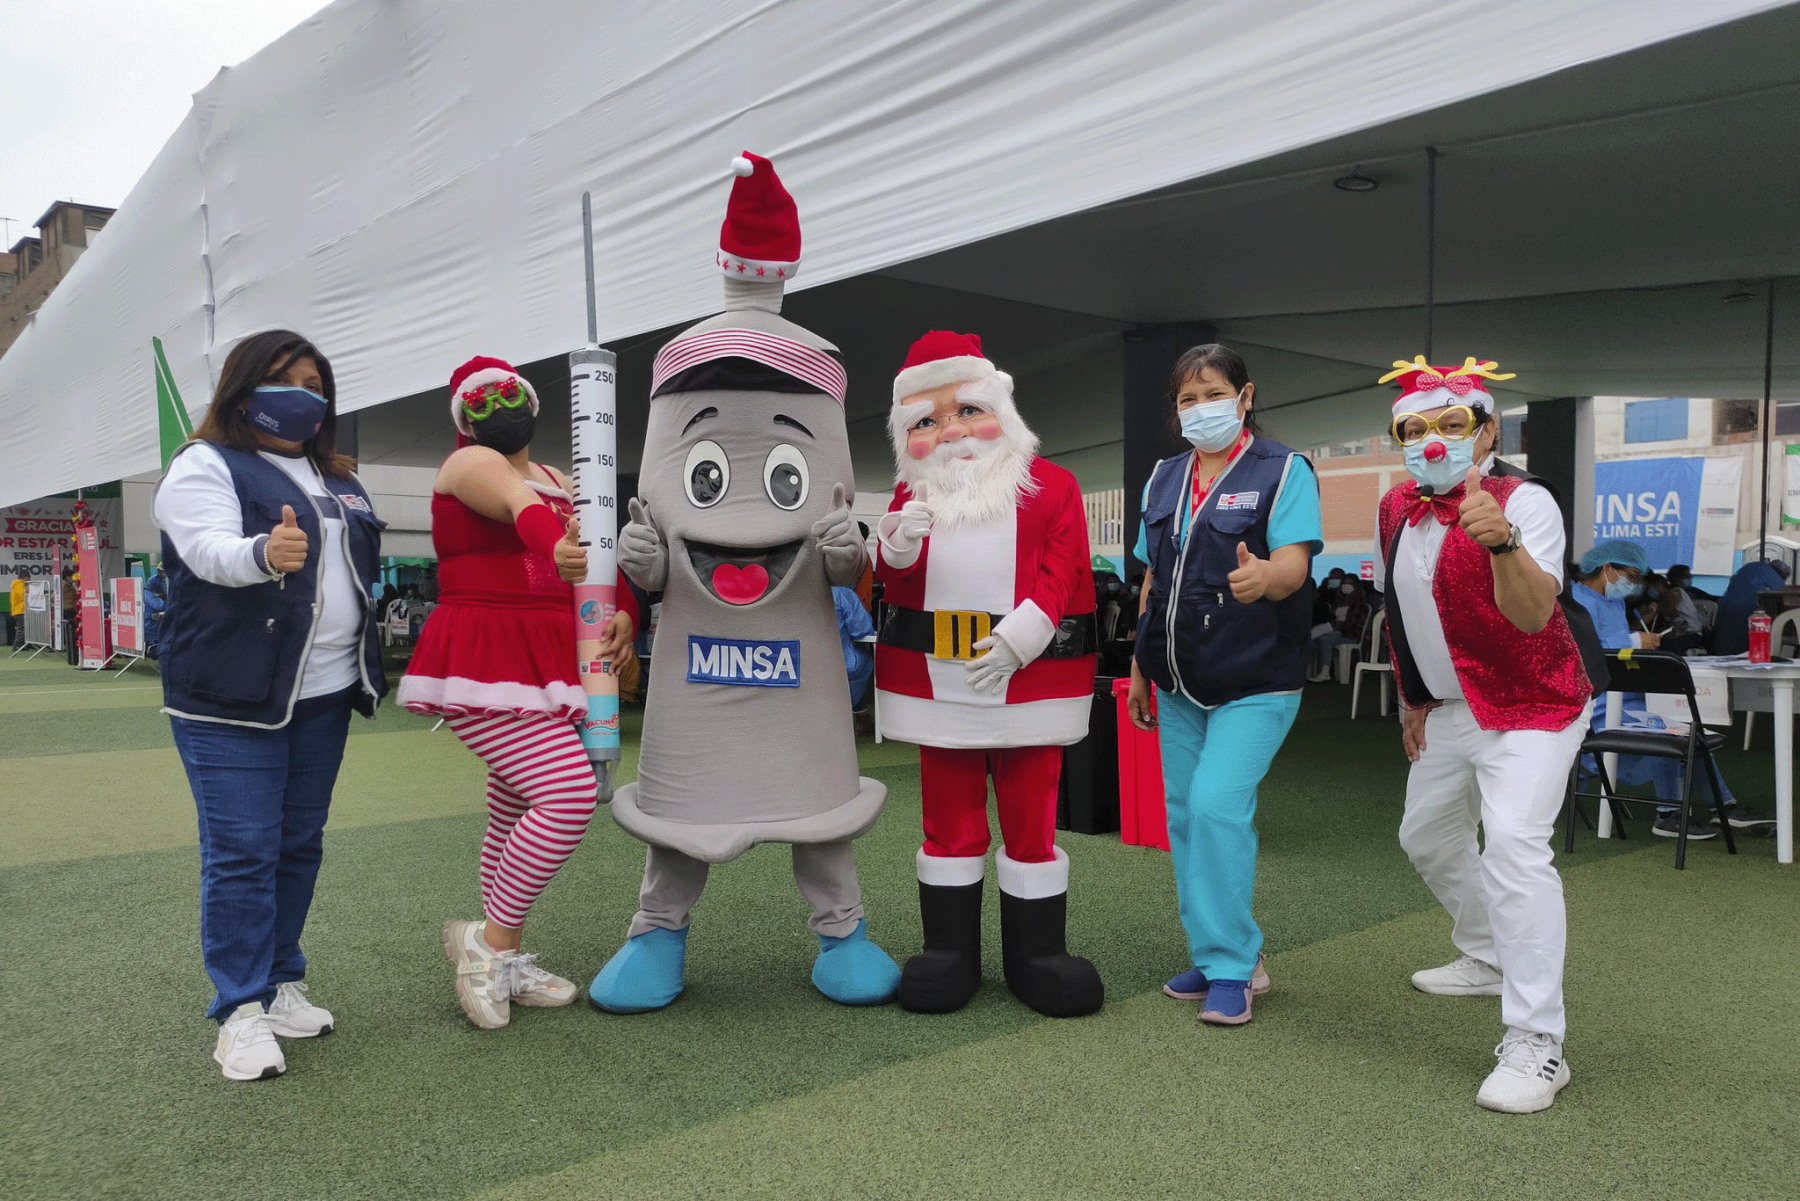 El espíritu navideño llegó al Estadio Chancas de Andahuaylas de Santa Anita con el Vacuna Fest Navideño. Foto: Minsa